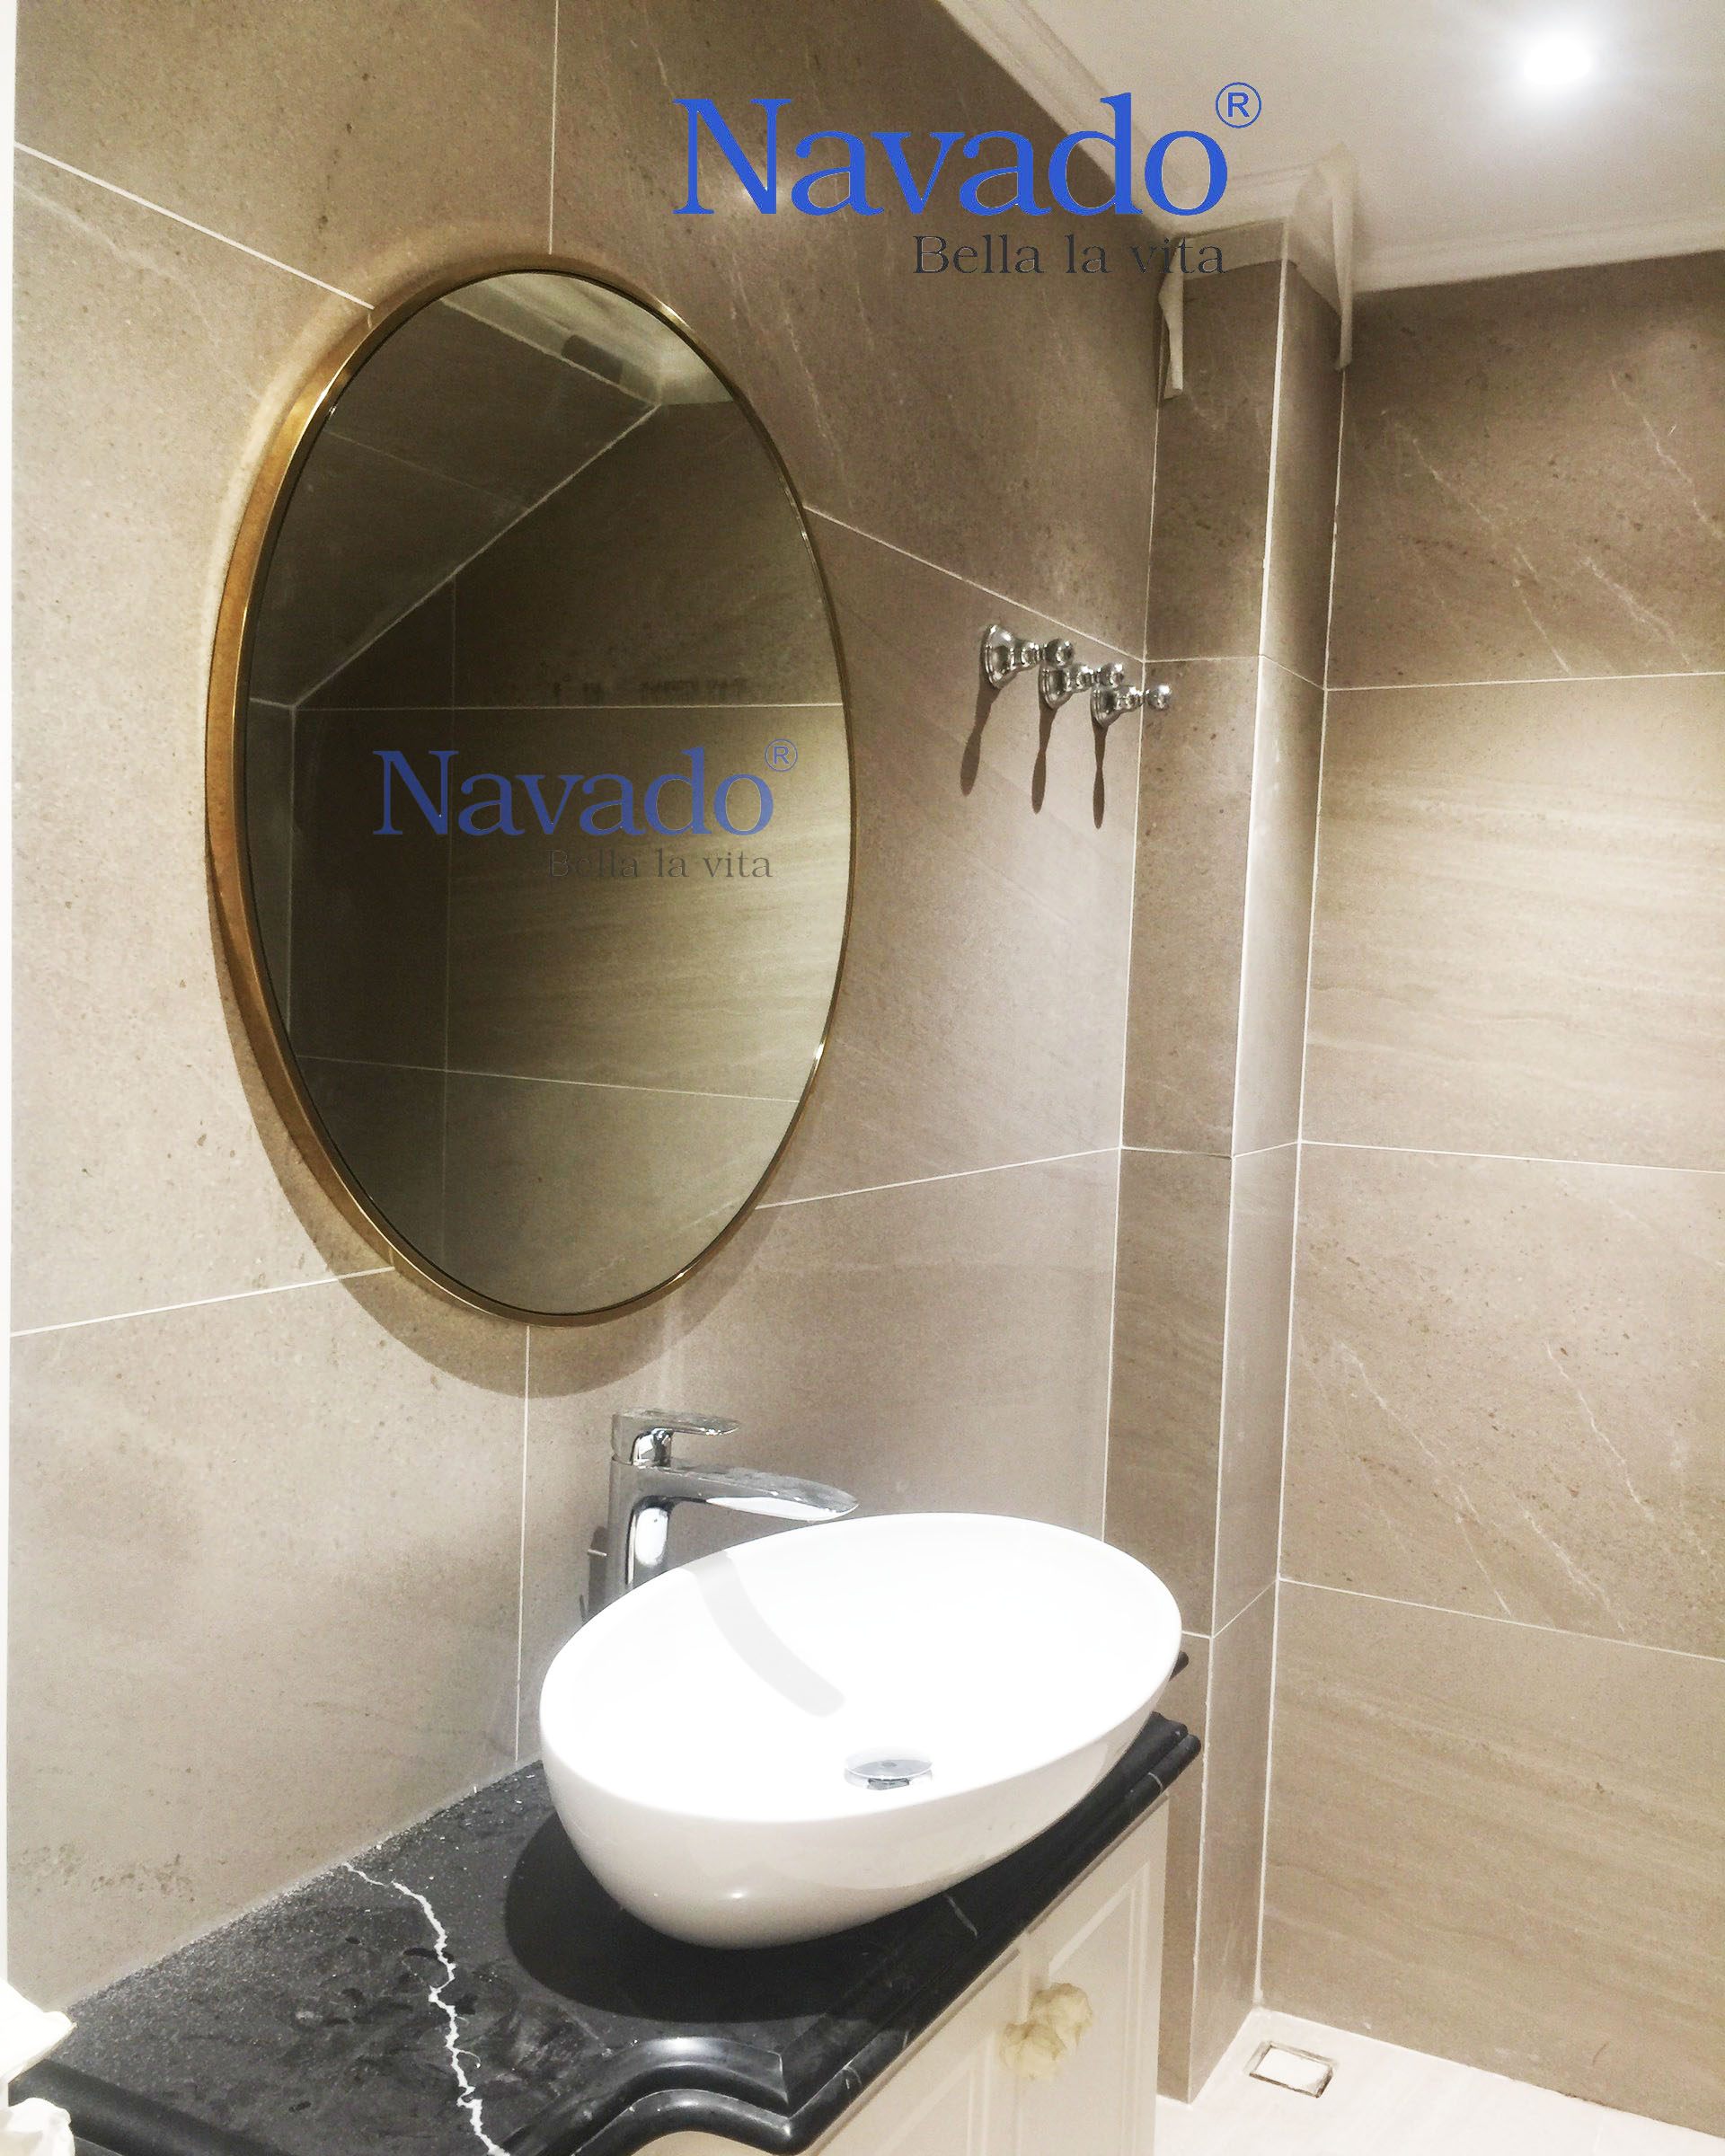 Gương tròn viền Inox vàng: Nếu bạn đang tìm kiếm gương phòng tắm với thiết kế đẳng cấp và sáng tạo, thì gương tròn viền Inox vàng là một lựa chọn hoàn hảo. Với đường viền vàng chất lượng cao, sản phẩm này mang đến cho không gian phòng tắm của bạn một phong cách thiết kế hiện đại và đầy cá tính.